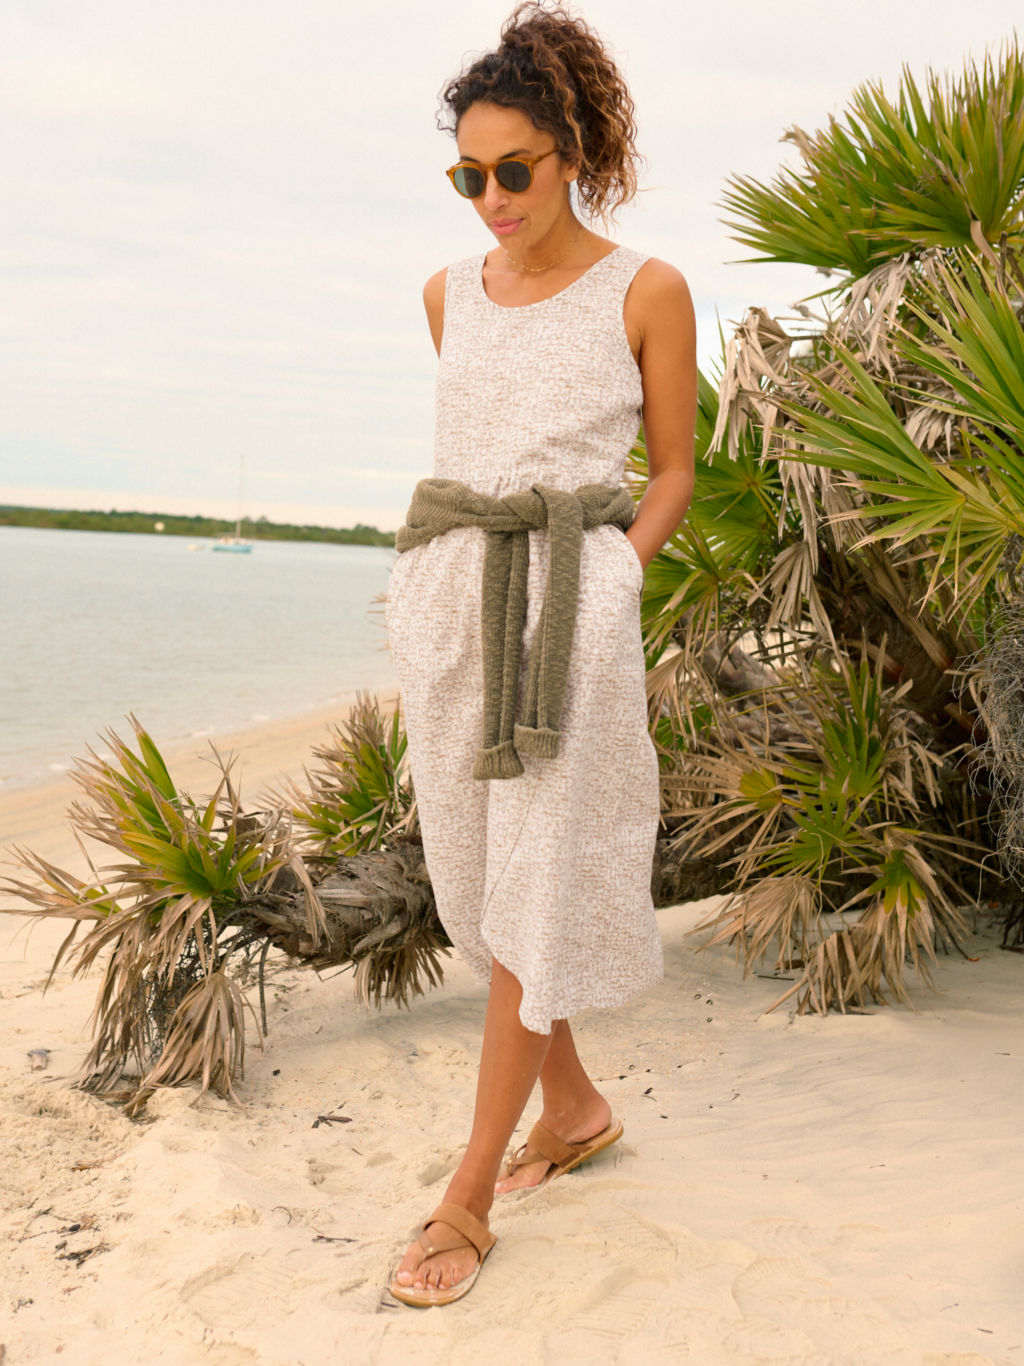 A model wearing a long linen dress, sunglasses, and sandals walks a sandy beach.